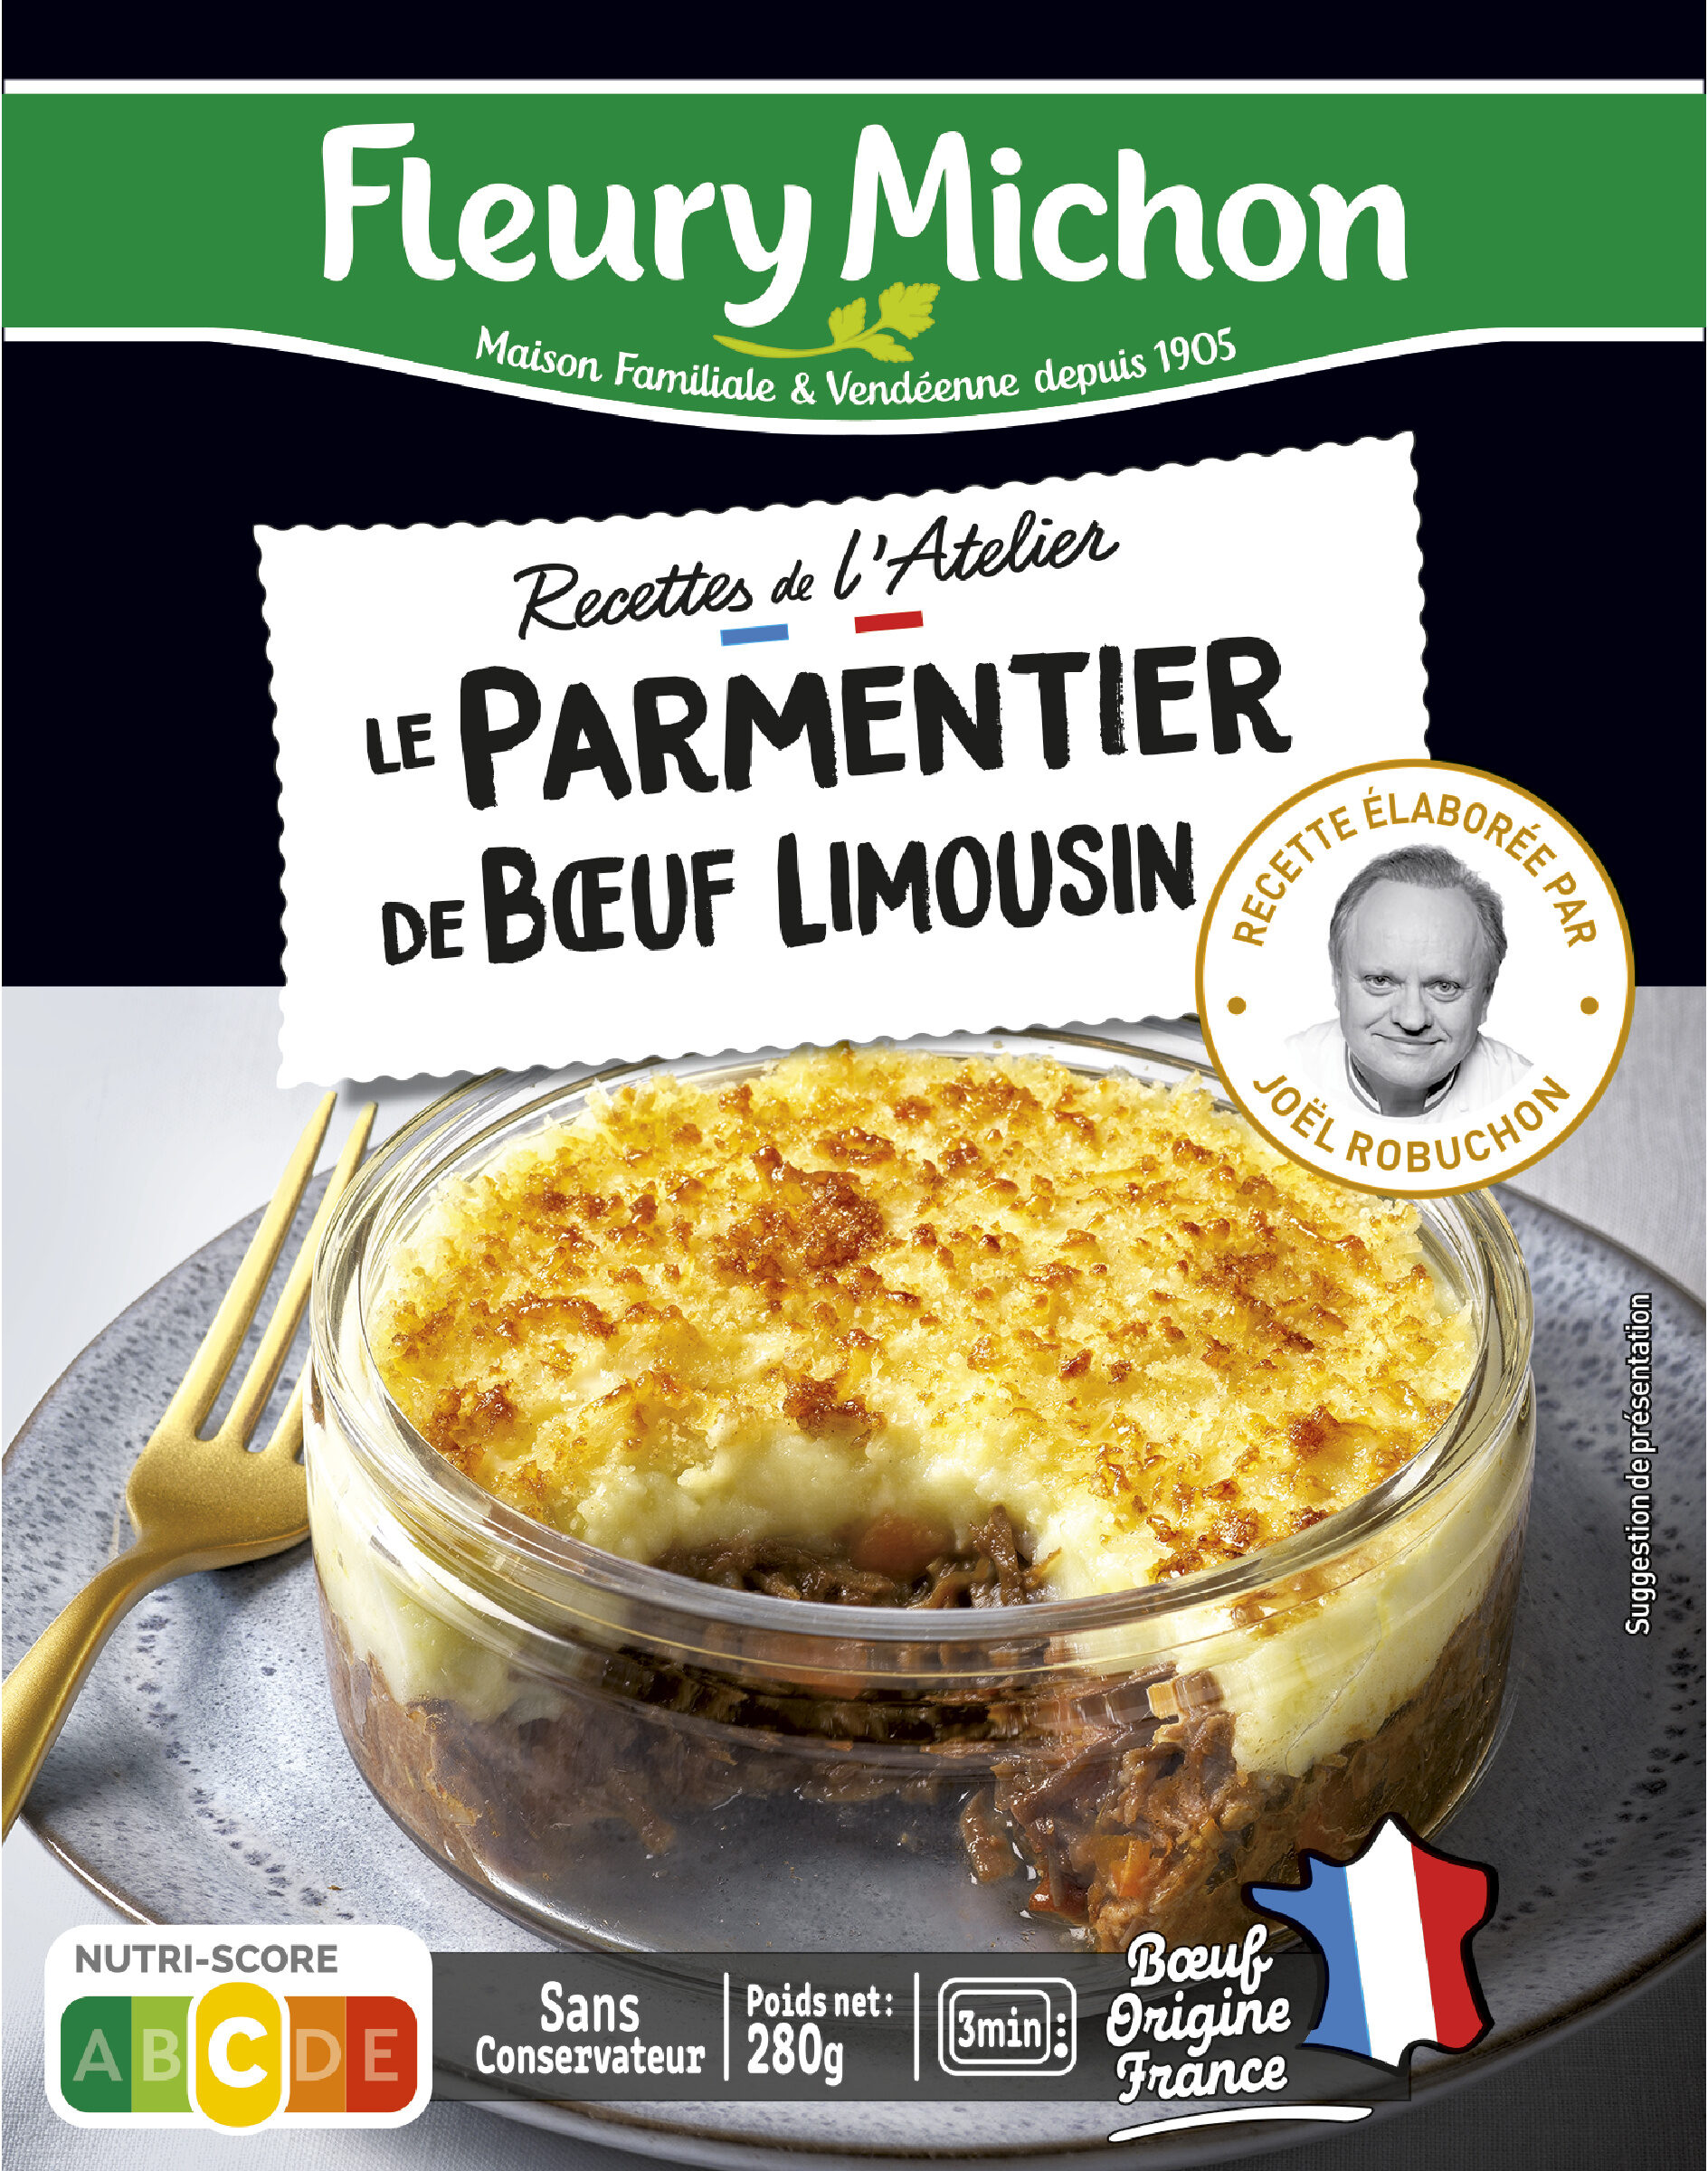 Le parmentier de boeuf Limousin - Product - fr